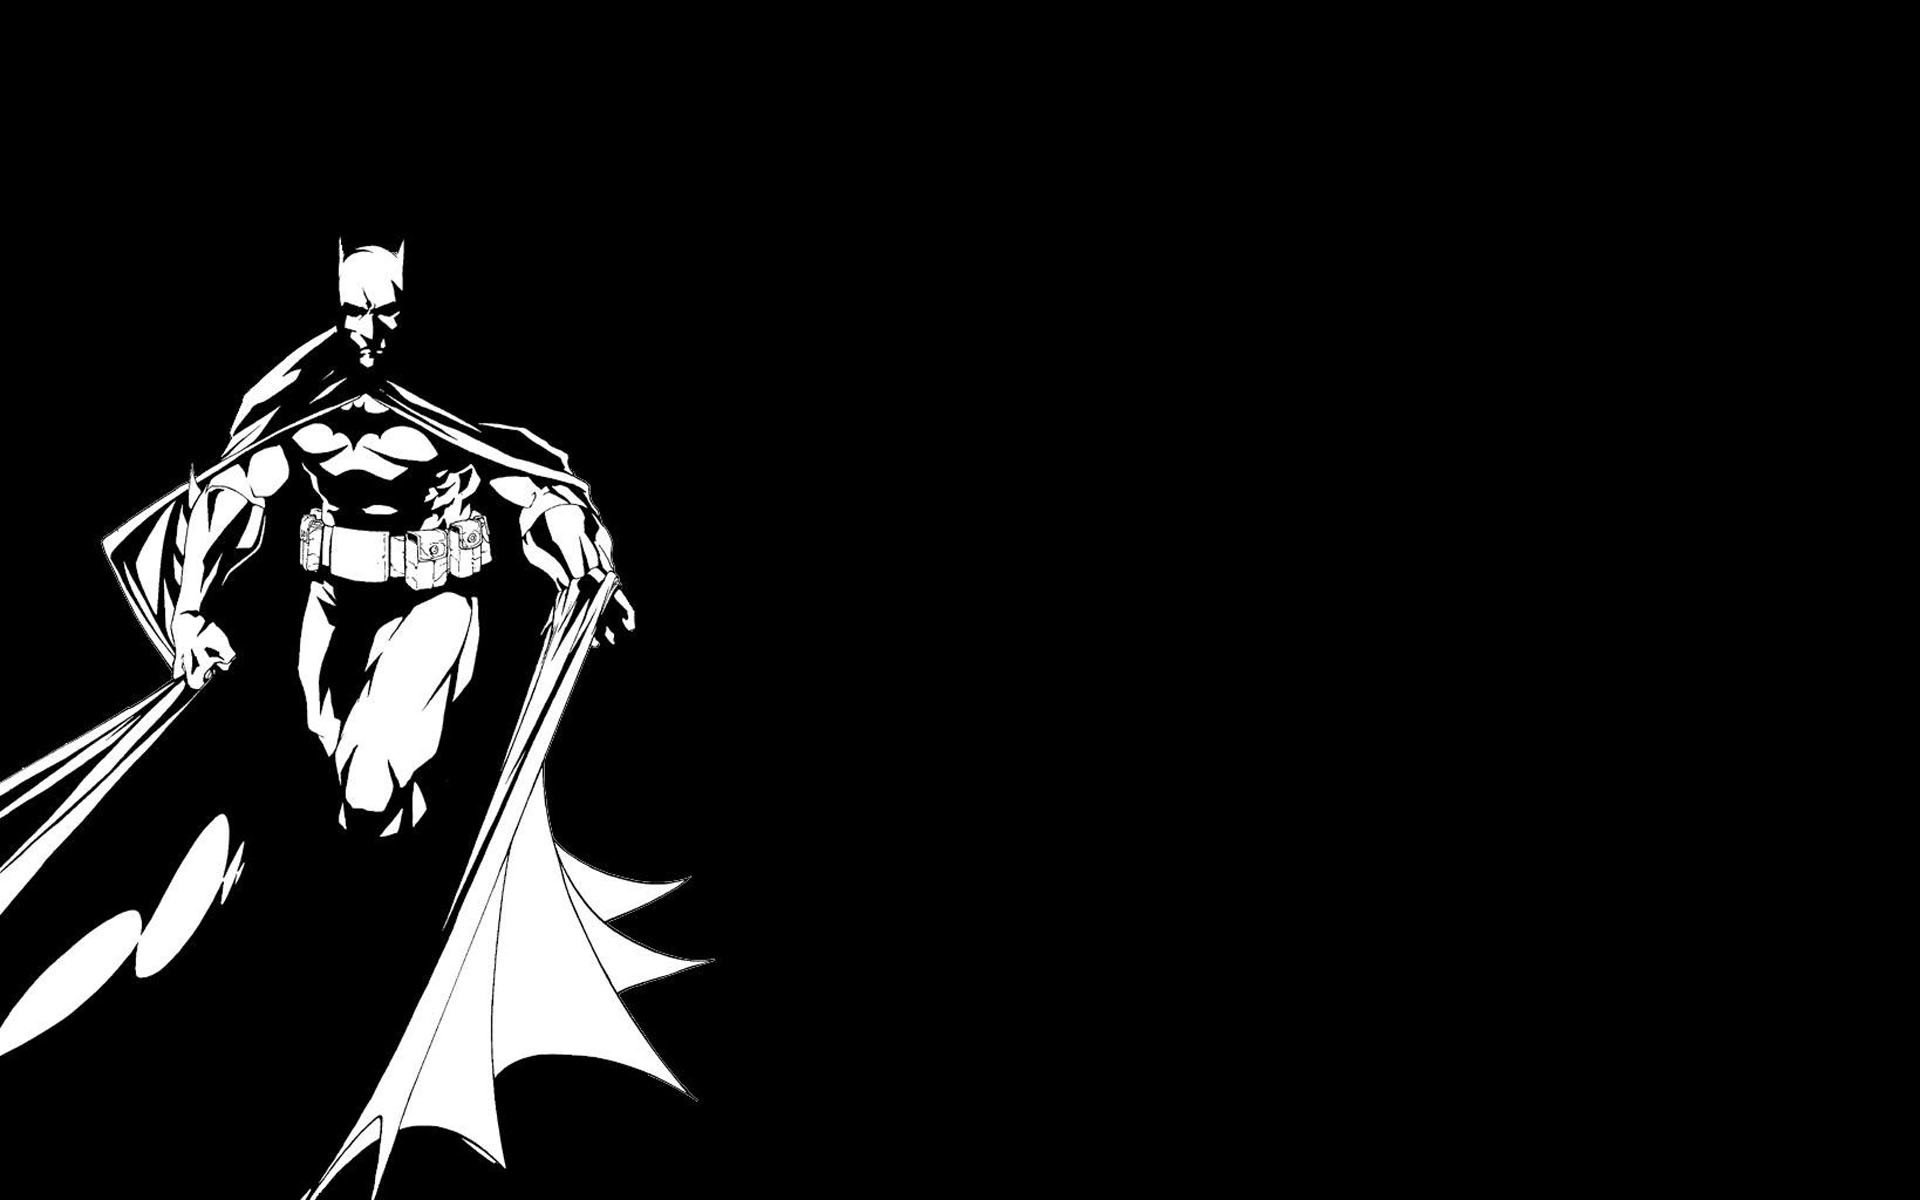 1920x1200 ... Wallpaper Batman Black & White ...